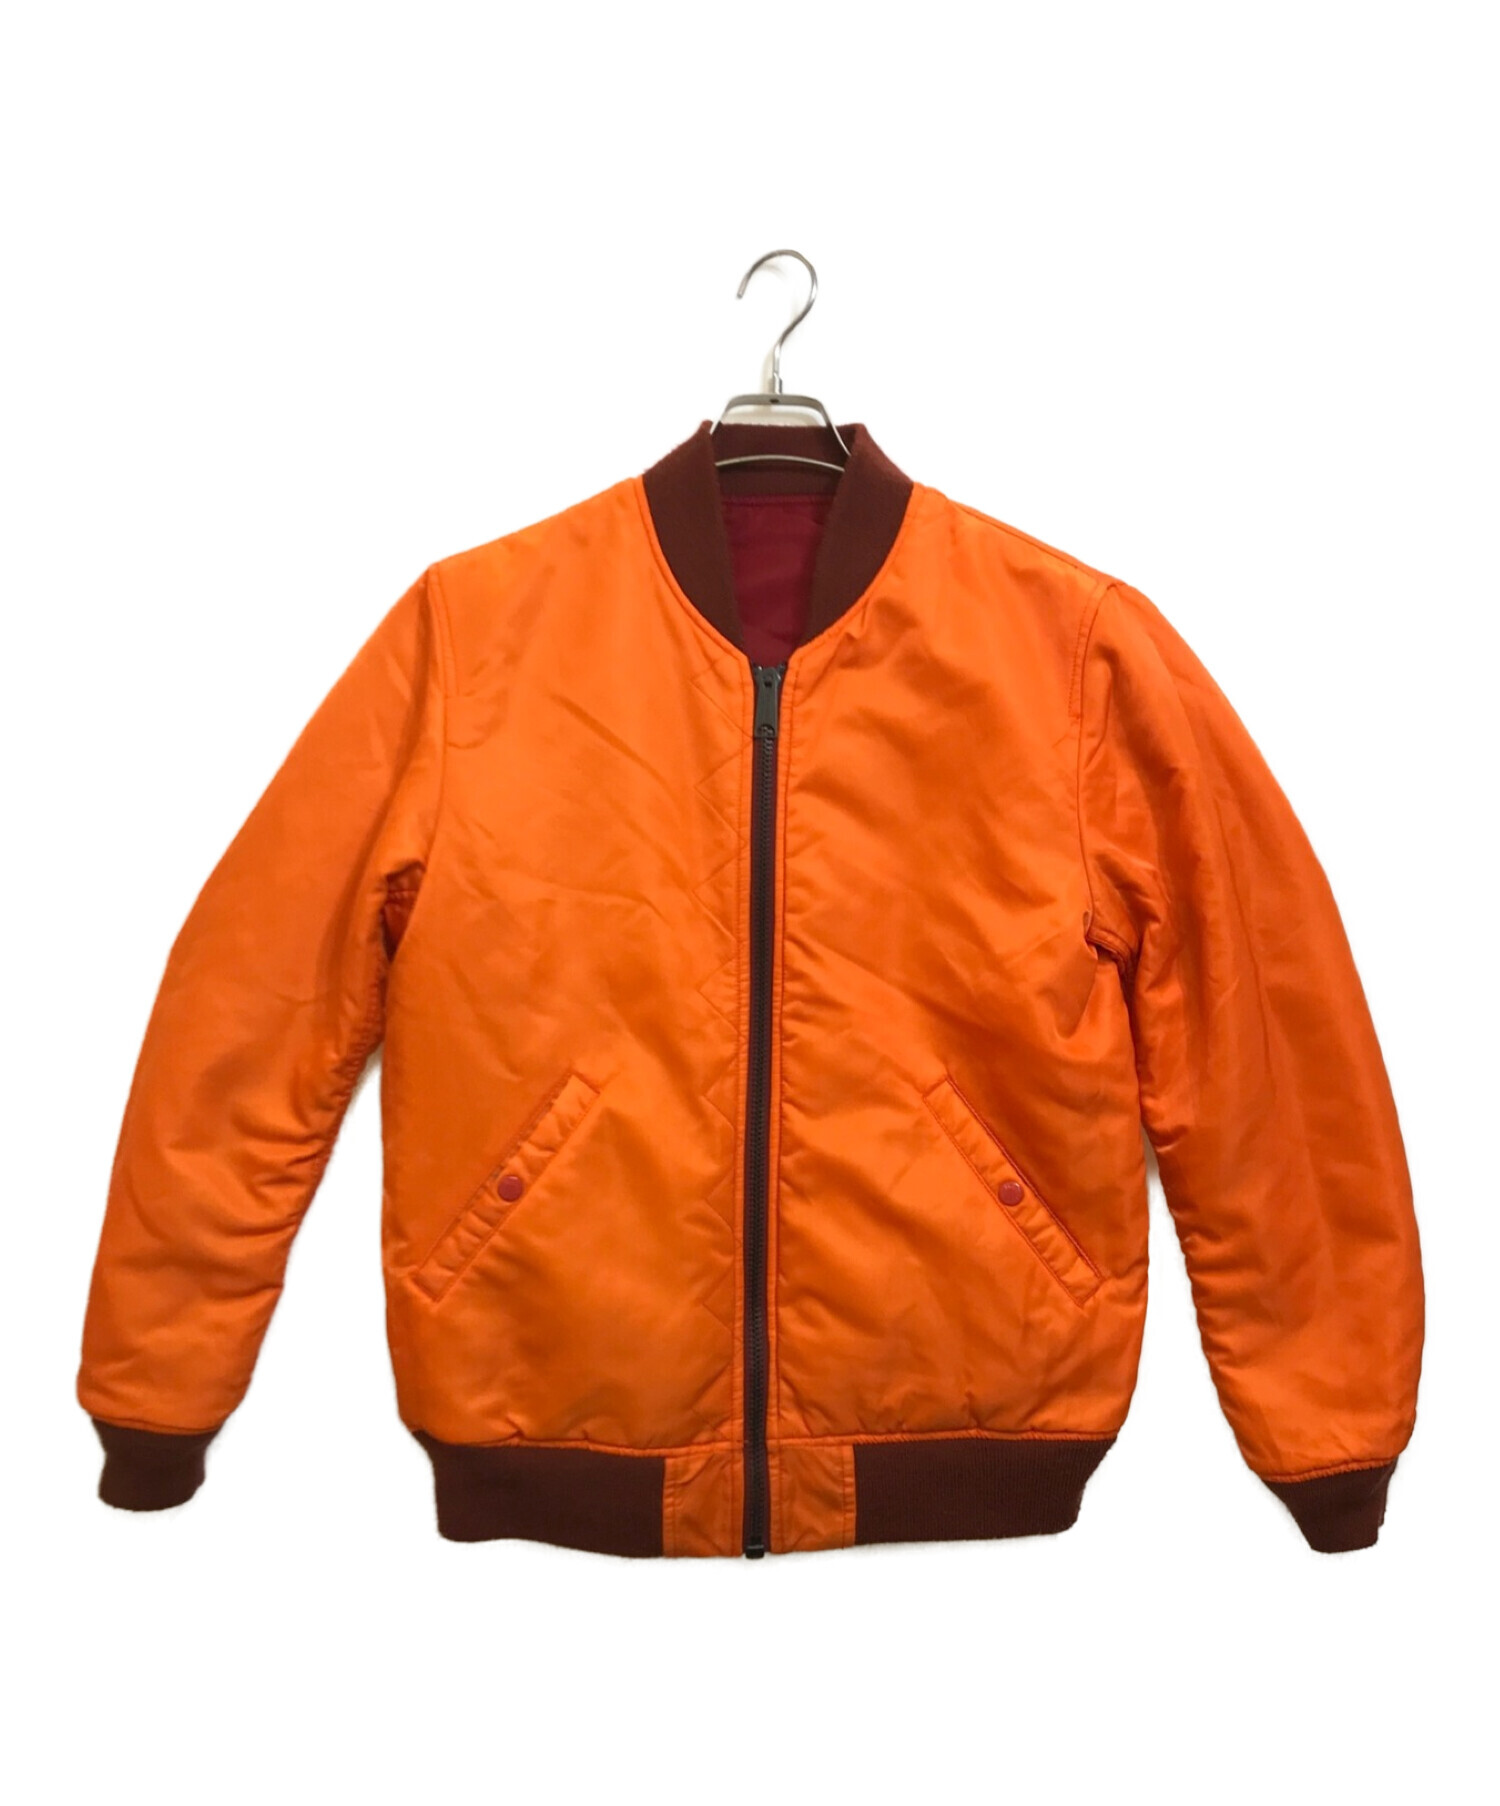 AVIREX (アヴィレックス) リバーシブルMA-1ジャケット レッド×オレンジ サイズ:M